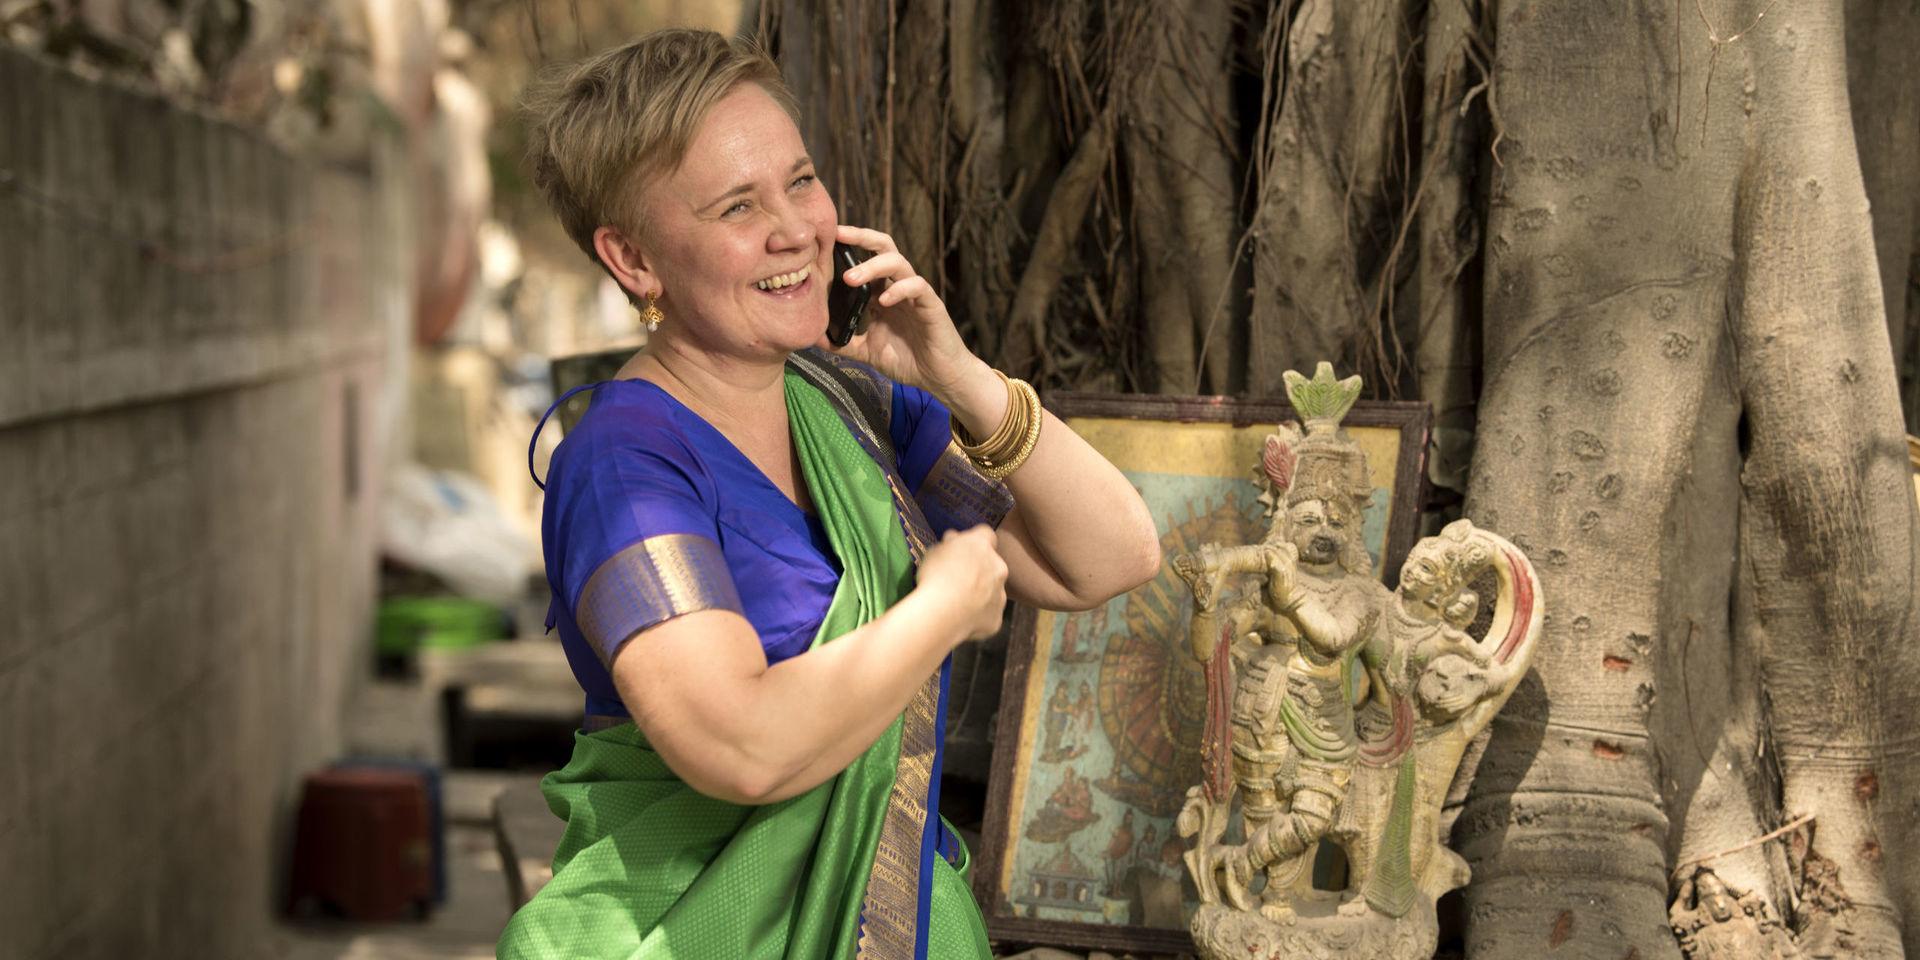 Gudomlig kommunikation? Nej Maria får ett jobbrelaterat samtal på mobilen. Träd används ofta som altare för gudabilder. Det sägs att det finns cirka 330 miljoner gudar i Indien, varje liten by har sin egen. Brahma, Vishnu och Shiva är de mest kända.